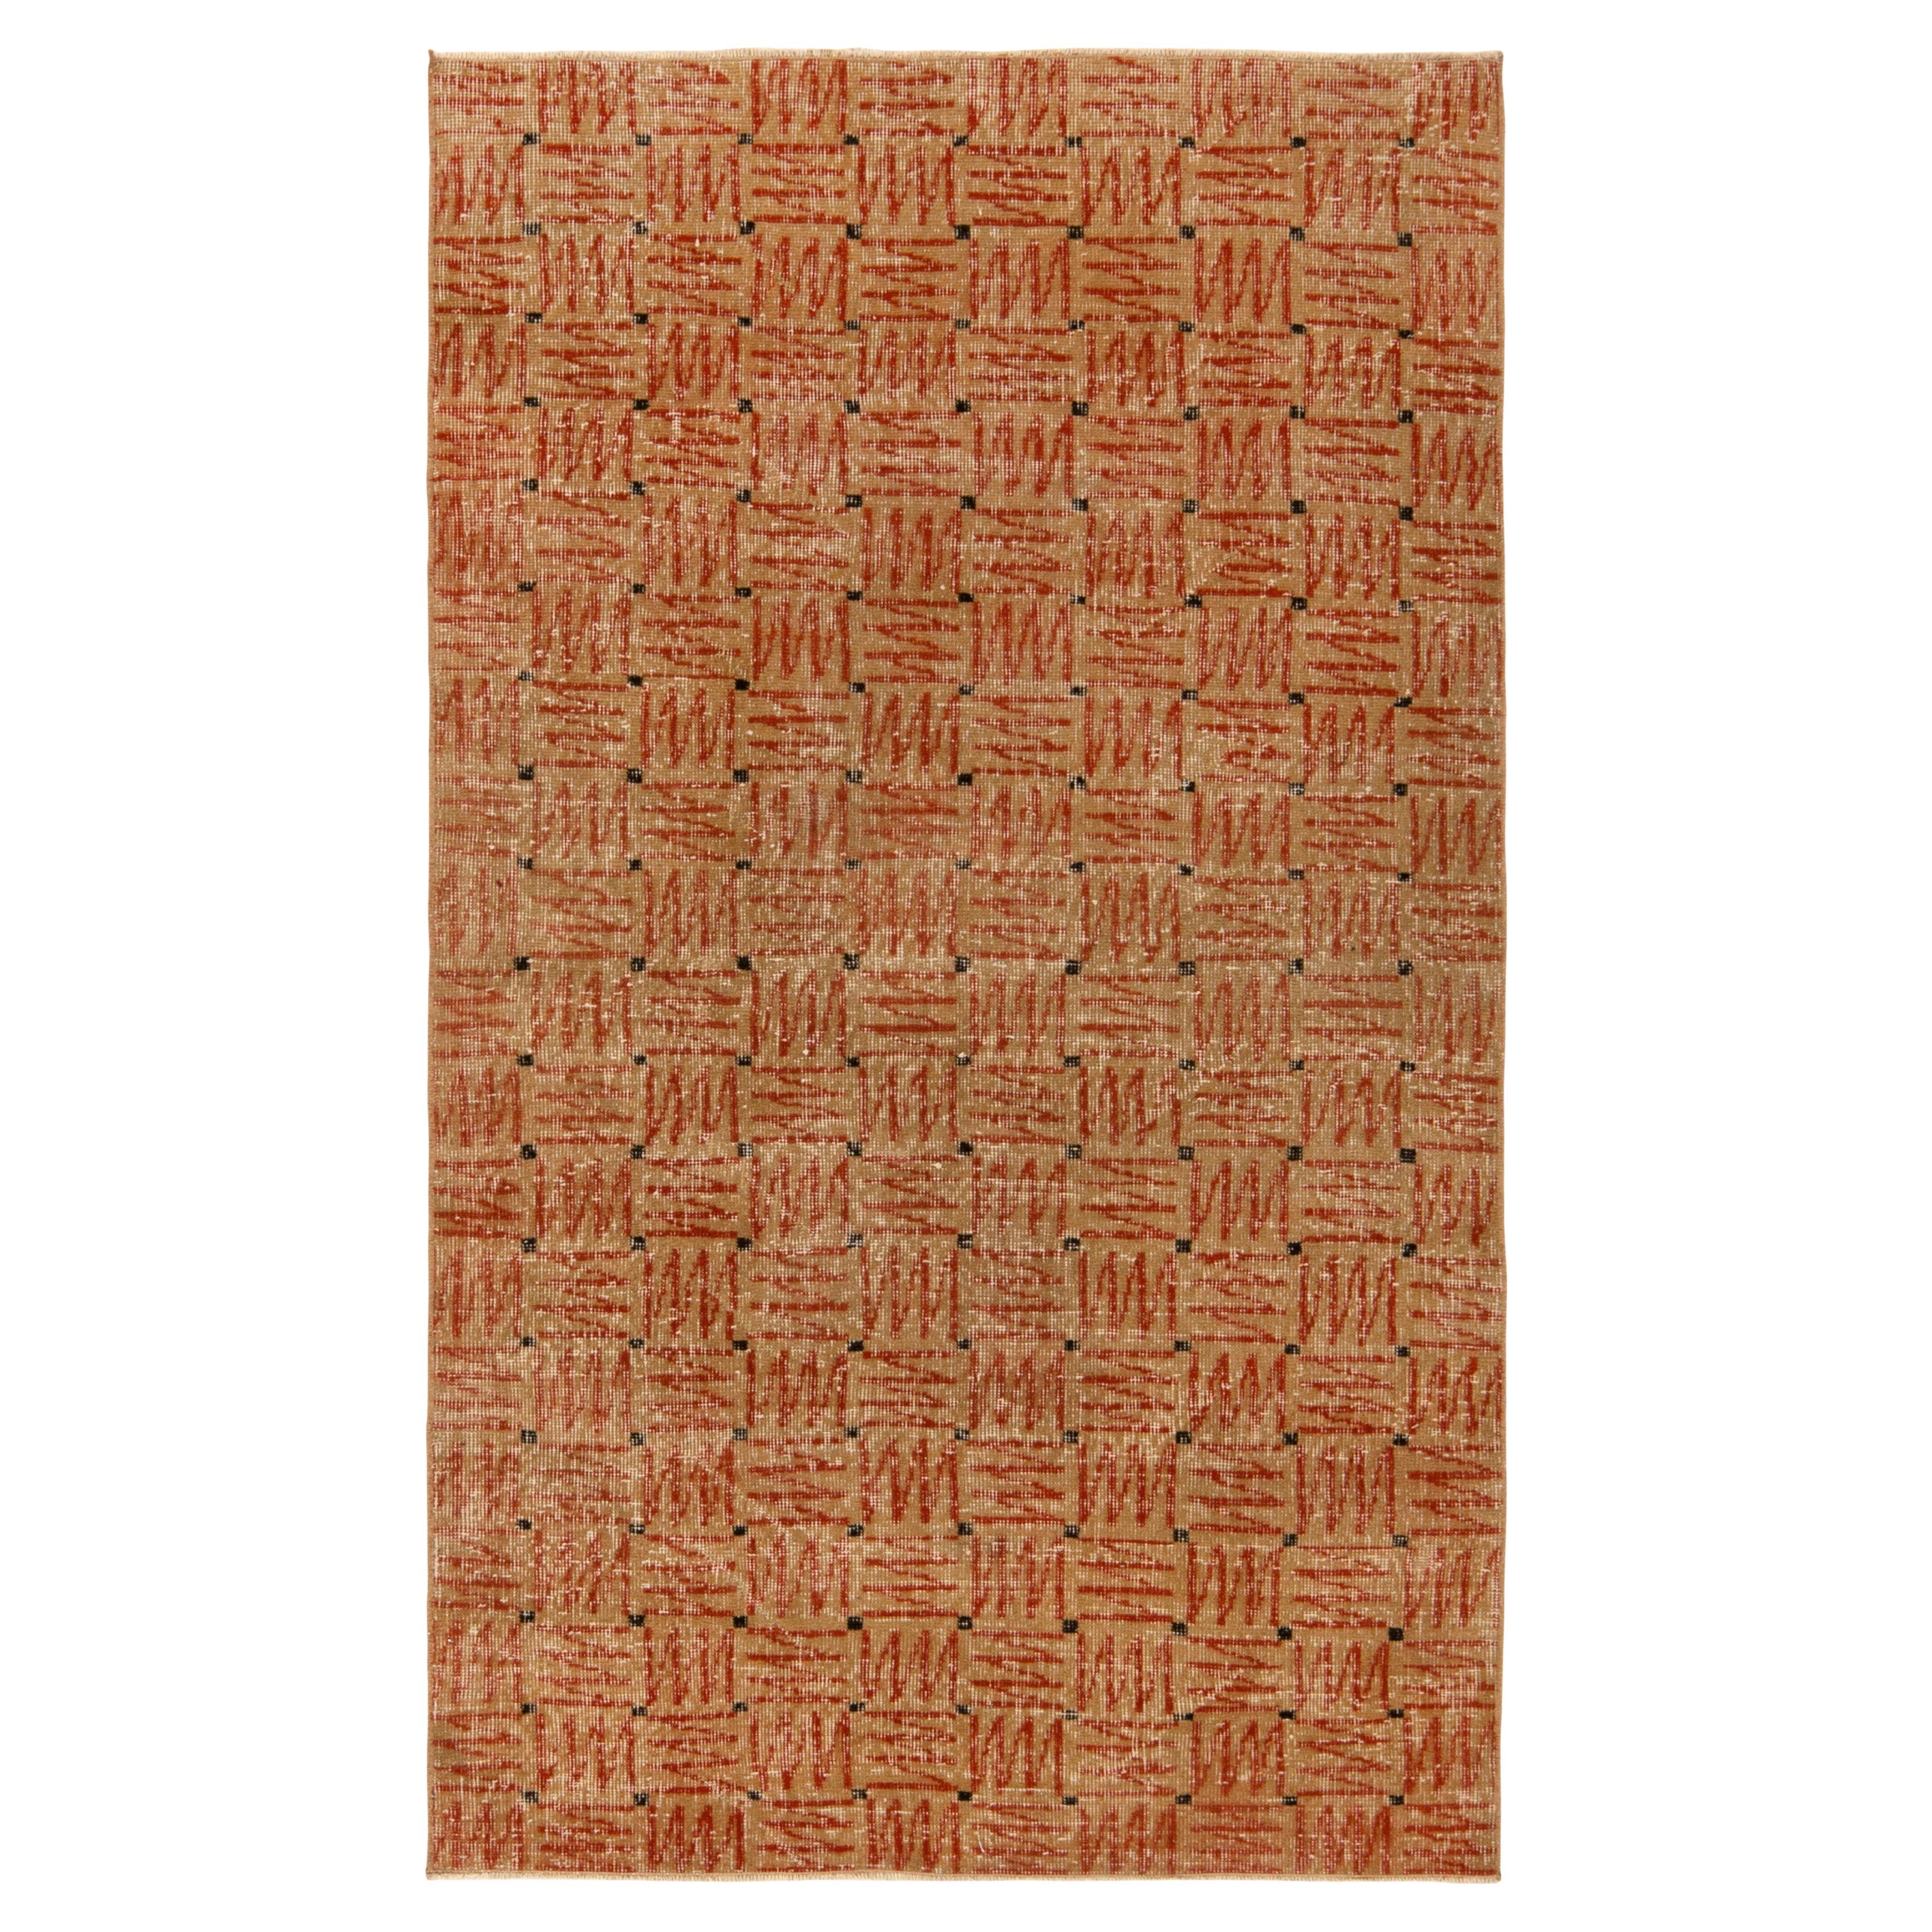 1960s Vintage Deco Rug in Beige-Brown and Red Geometric Patterns, by Rug & Kilim